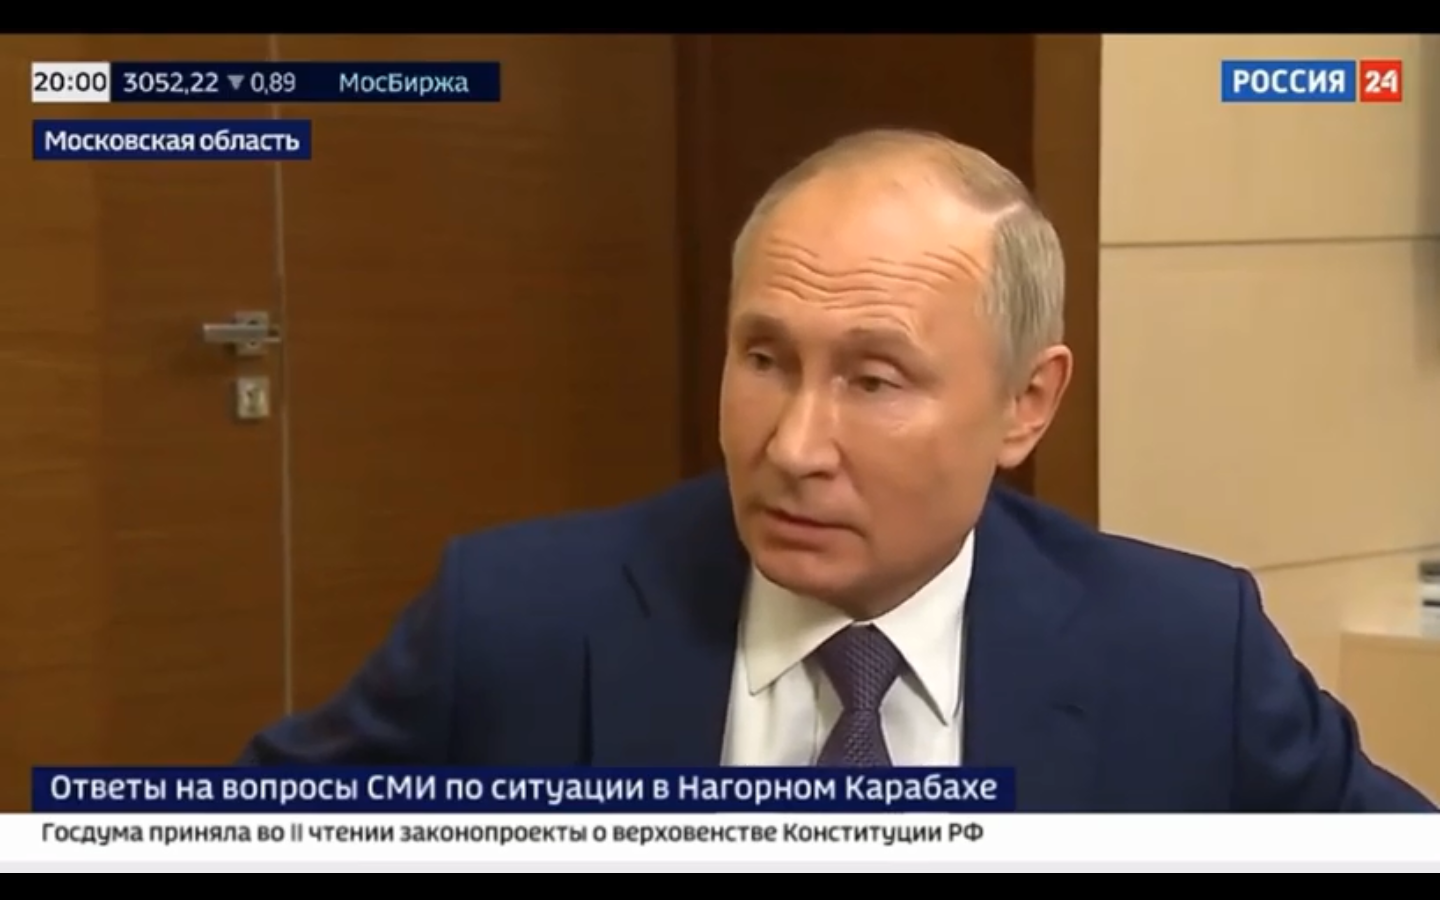 Καμπανάκι Πούτιν για τις καταστροφές που προκαλούν τα lockdown